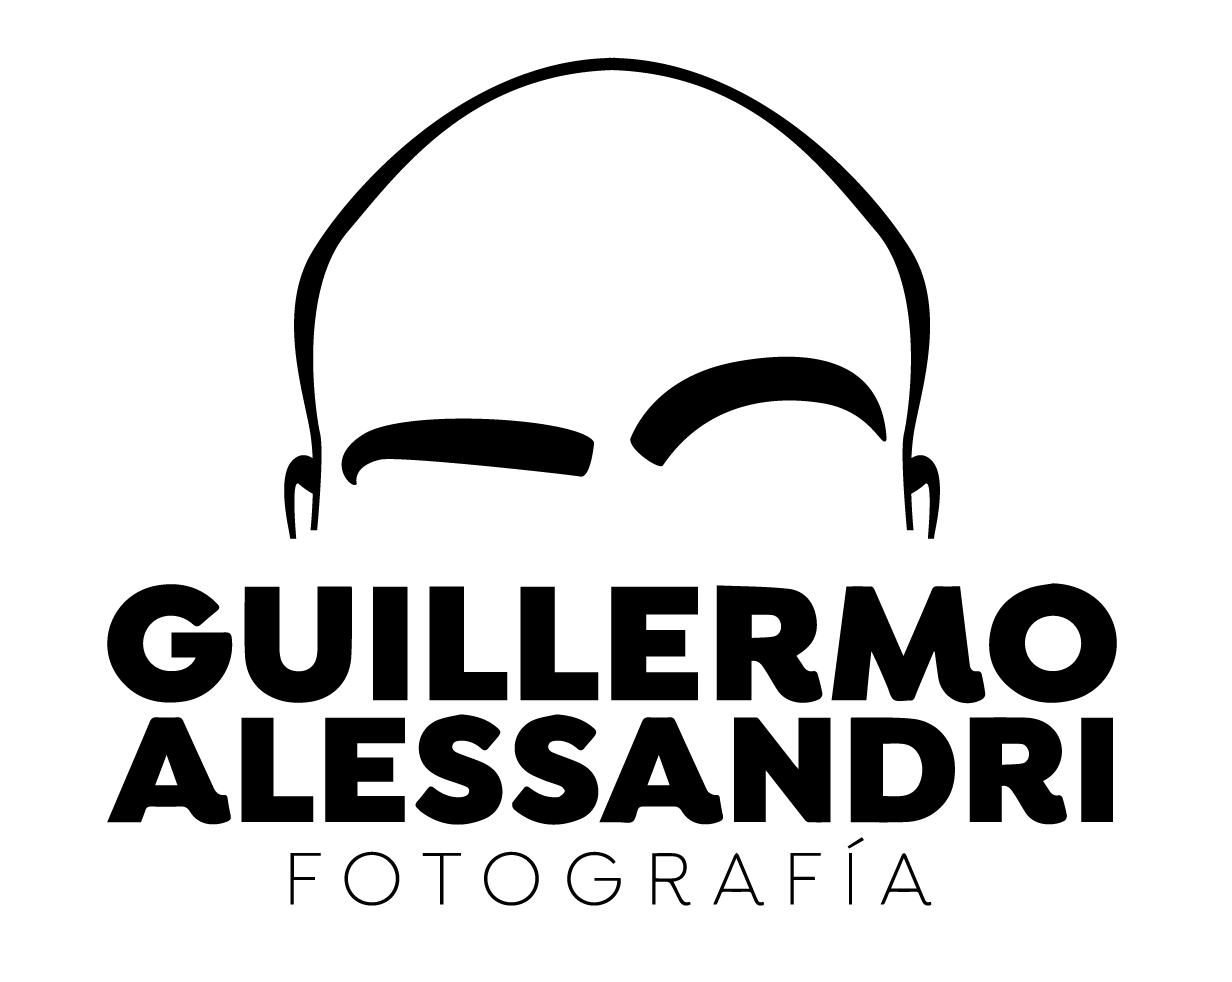 Guillermo Alessandri